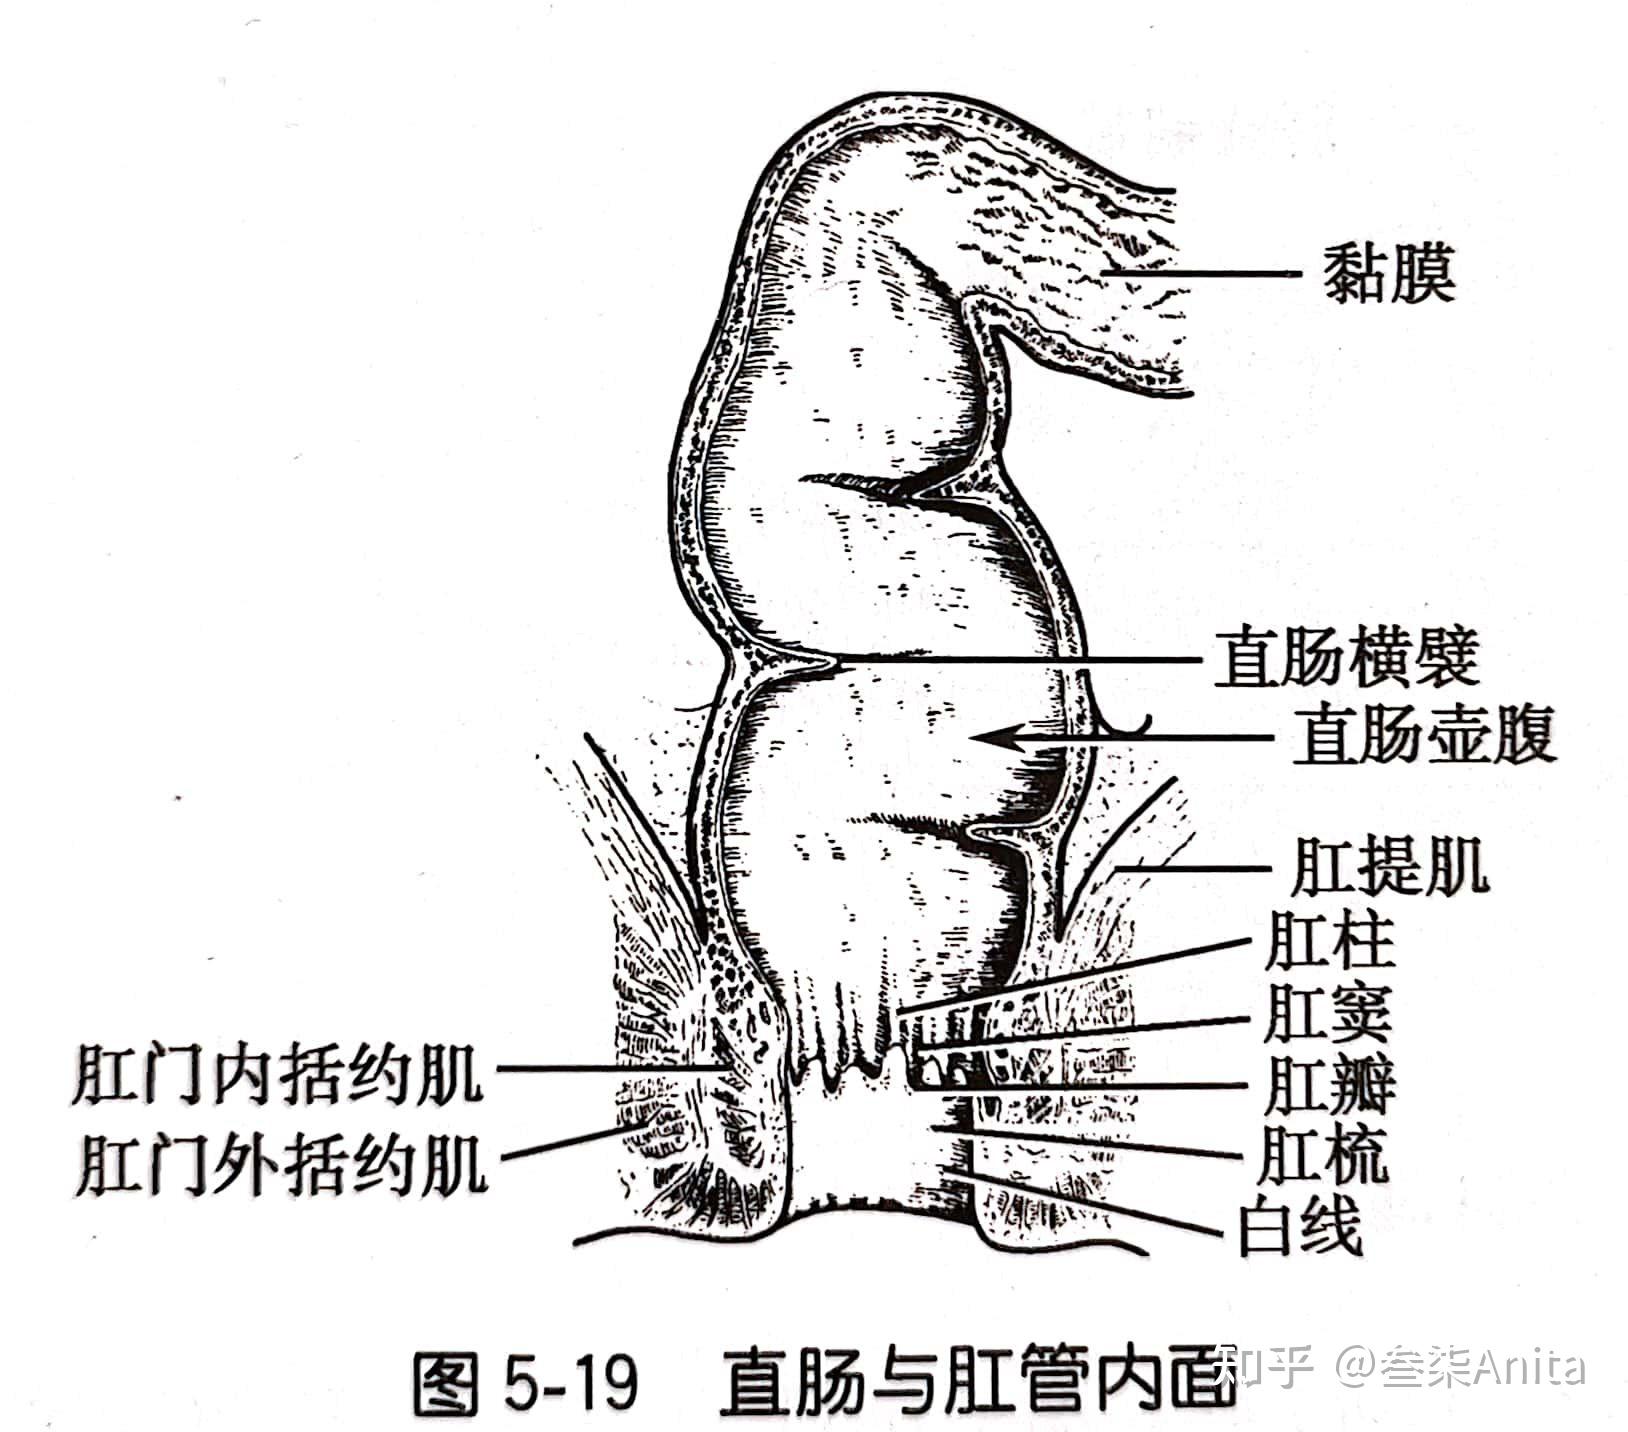 胃部体表投影图片